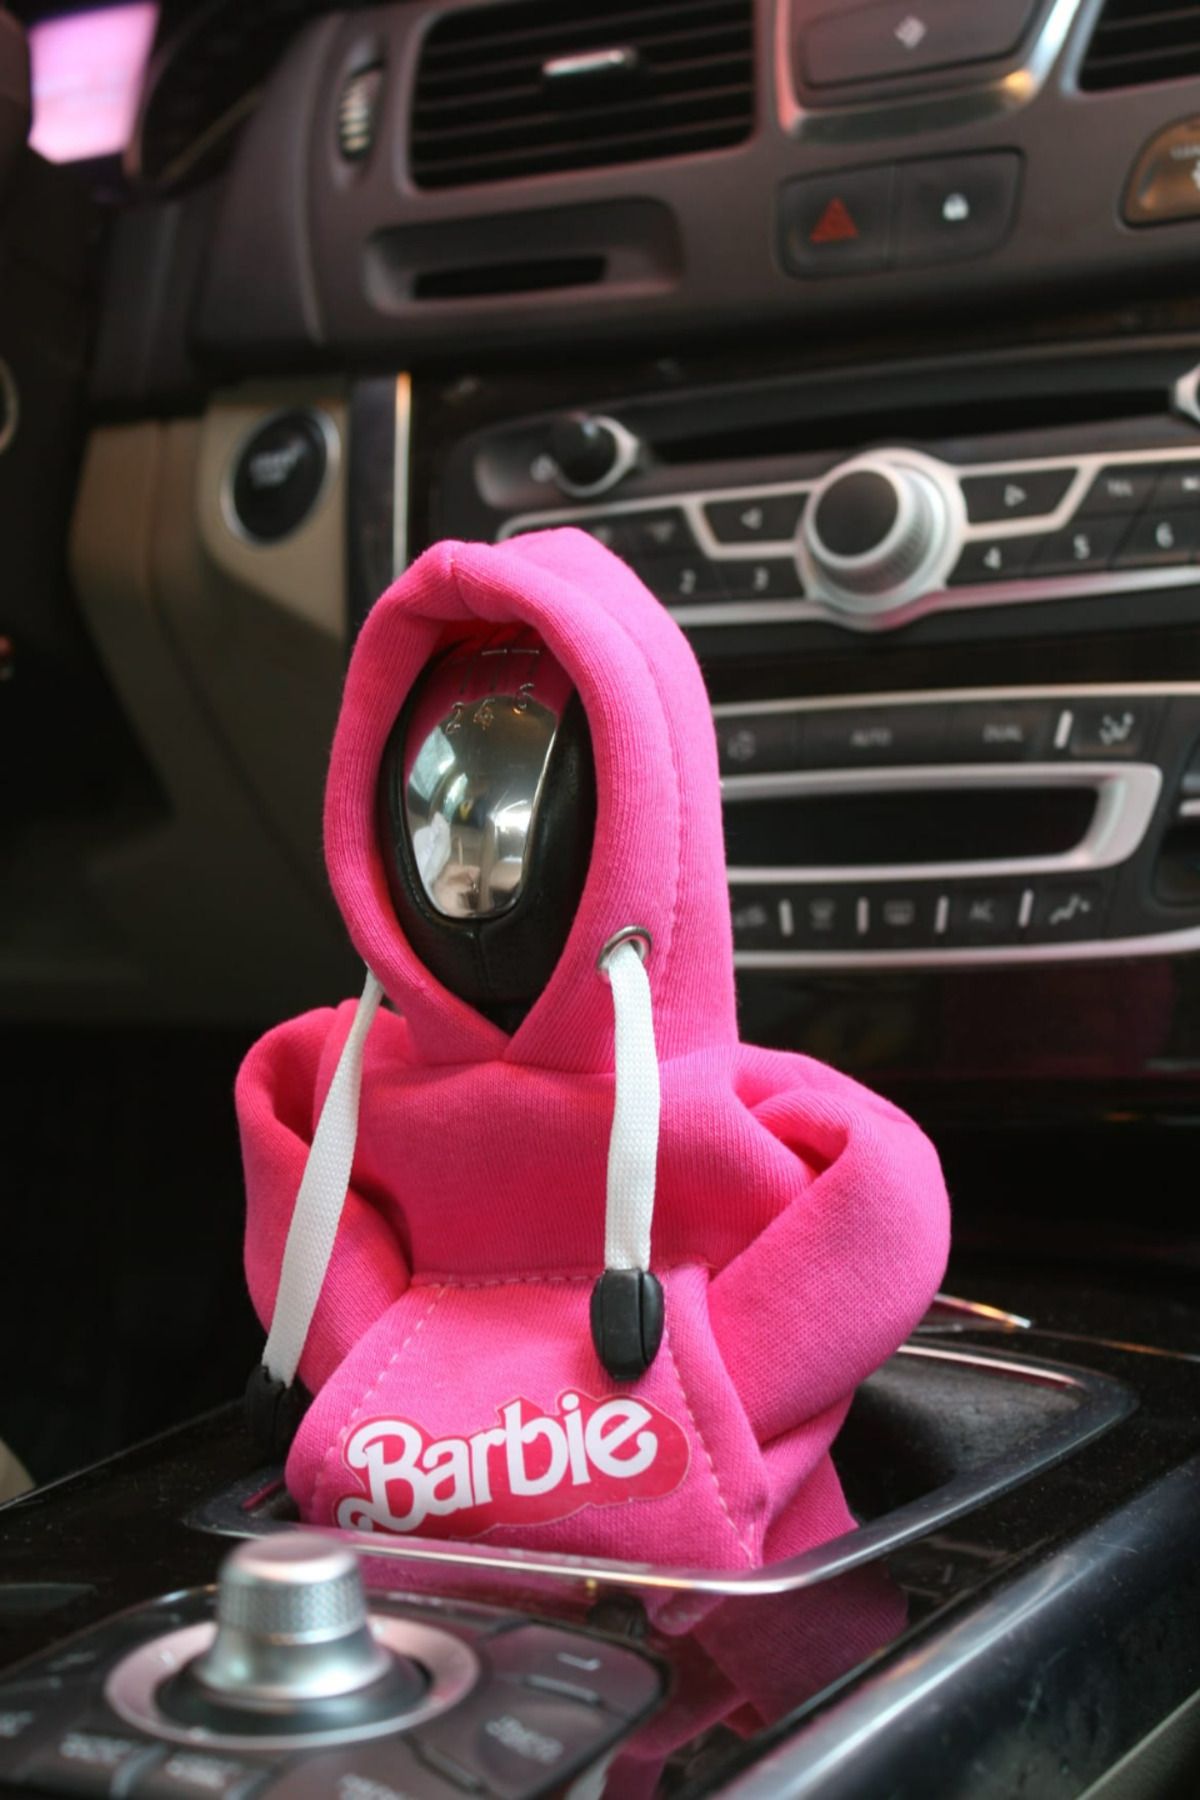 Emporium A kalite Bayanlara Özel Barbie Baskılı Kapşonlu Vites Kılıfı